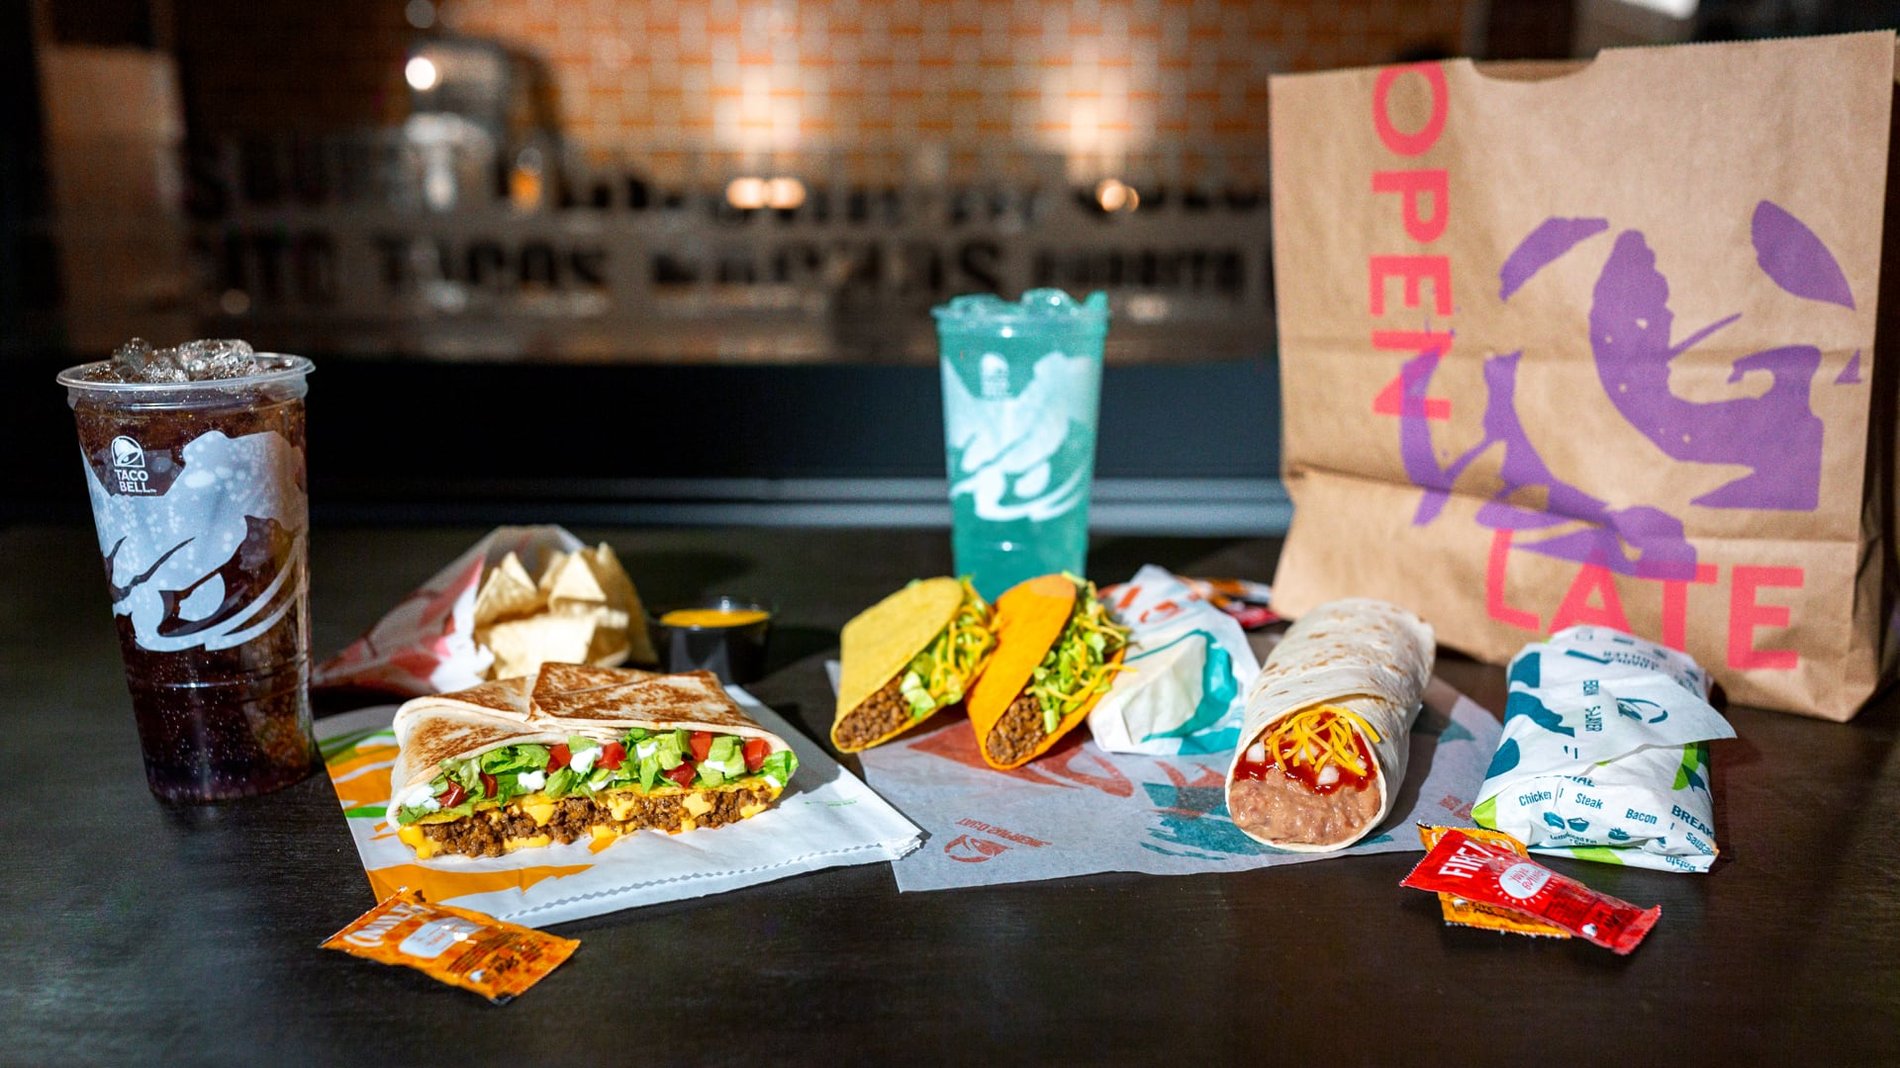 An arrangement of a Taco Bell Order including 1 Crunchy Taco, 1 Doritos® Loco Taco, 1 burrito, a couple of wrapped soft tacos, & 1 Crunchwrap Supreme®.